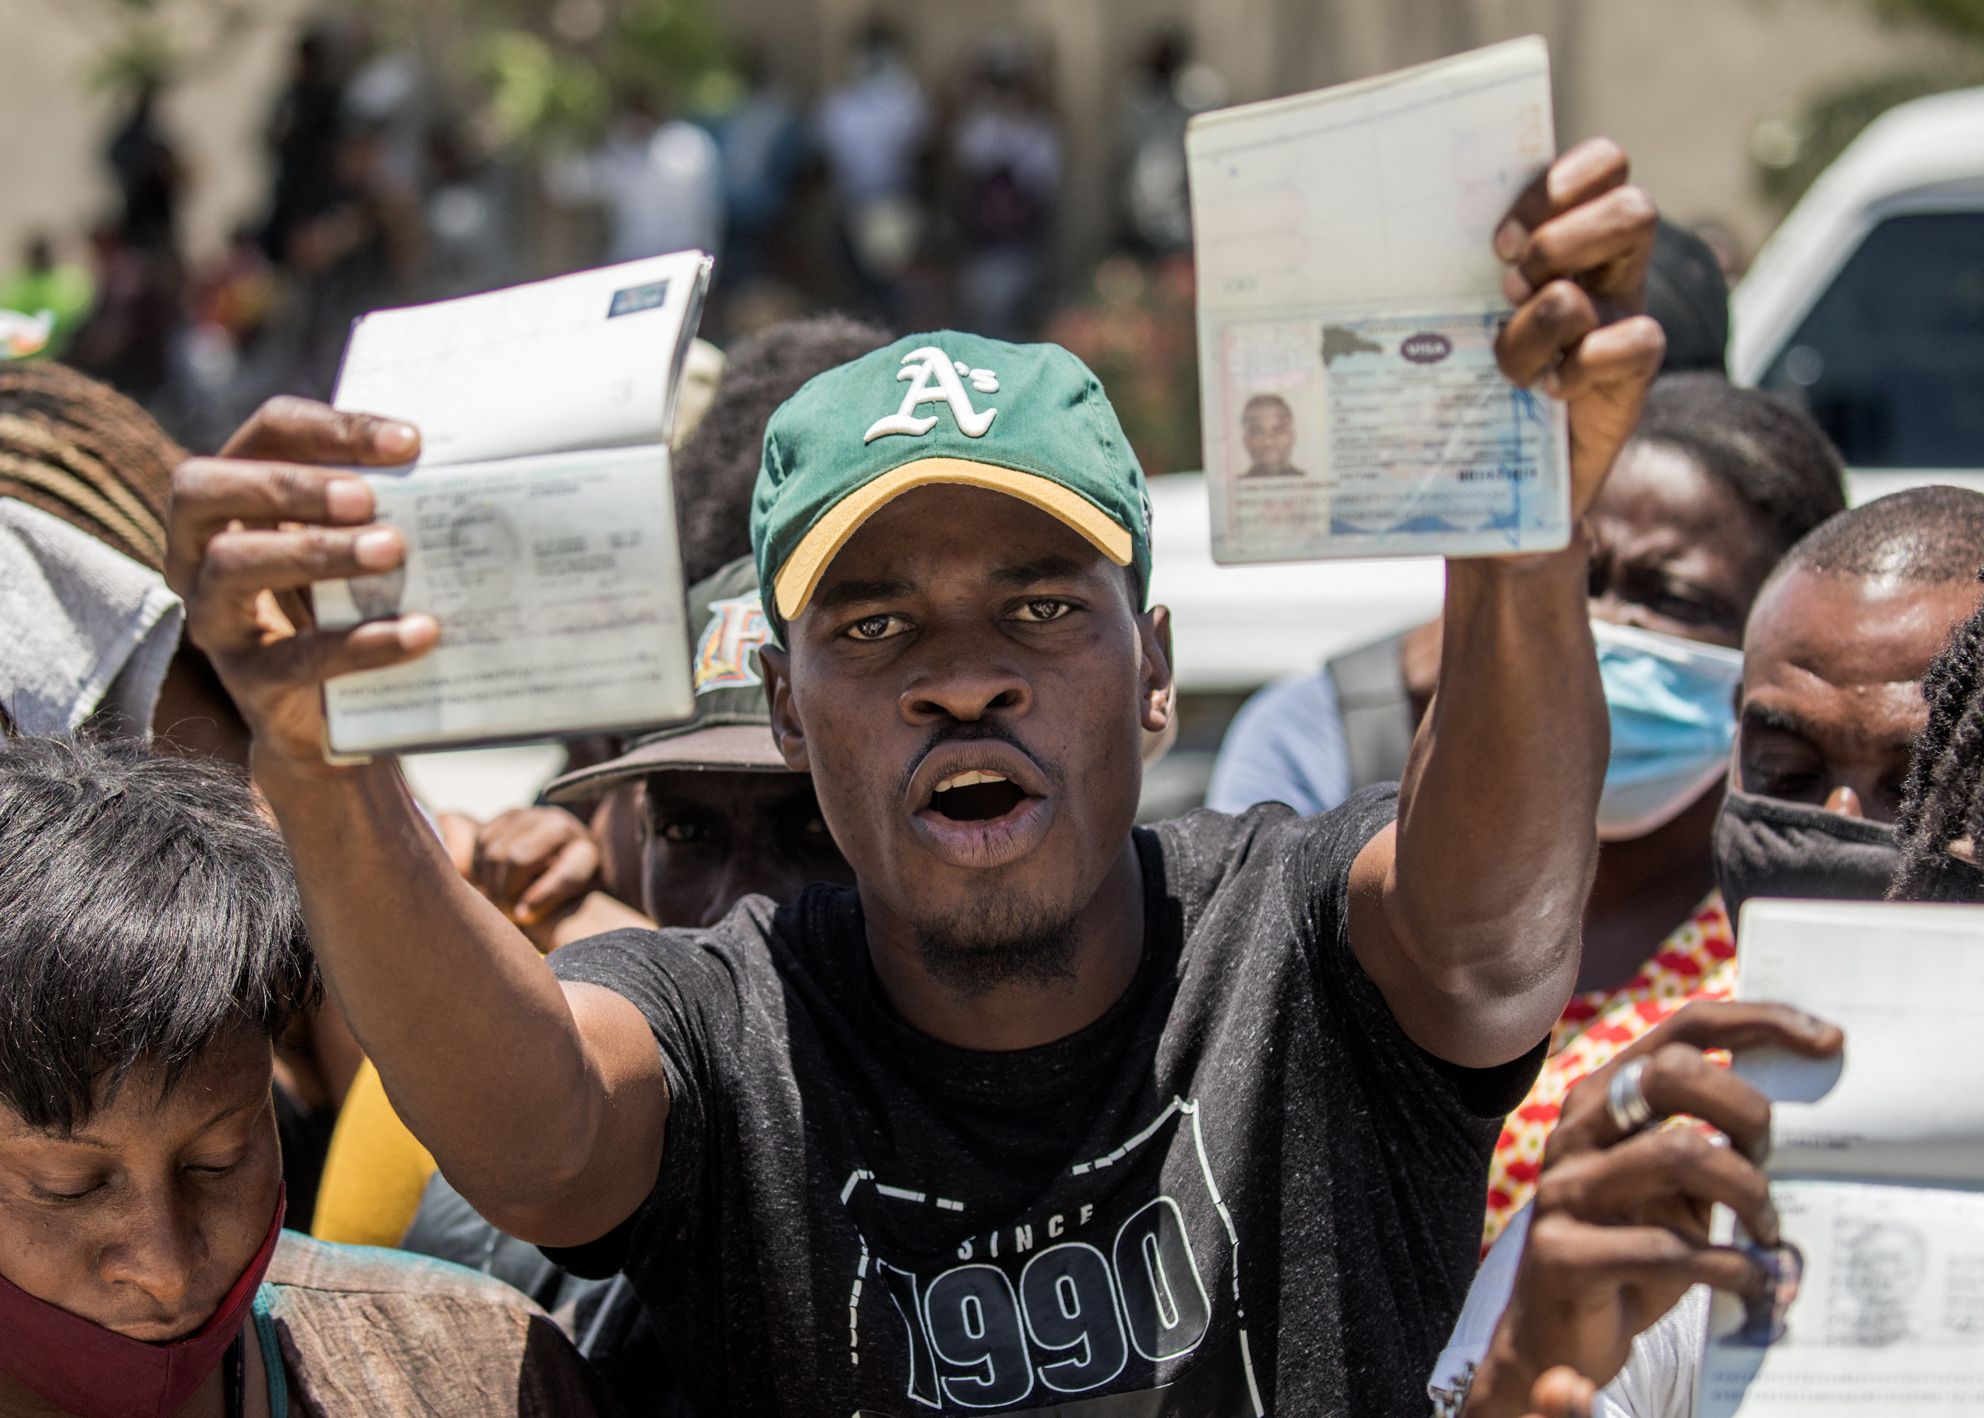 Haitianos solicitan asilo en la embajada de EE. UU. en su país, luego de la crisis política desatada por el magnicidio del presidente Jovenel Moise. AFP